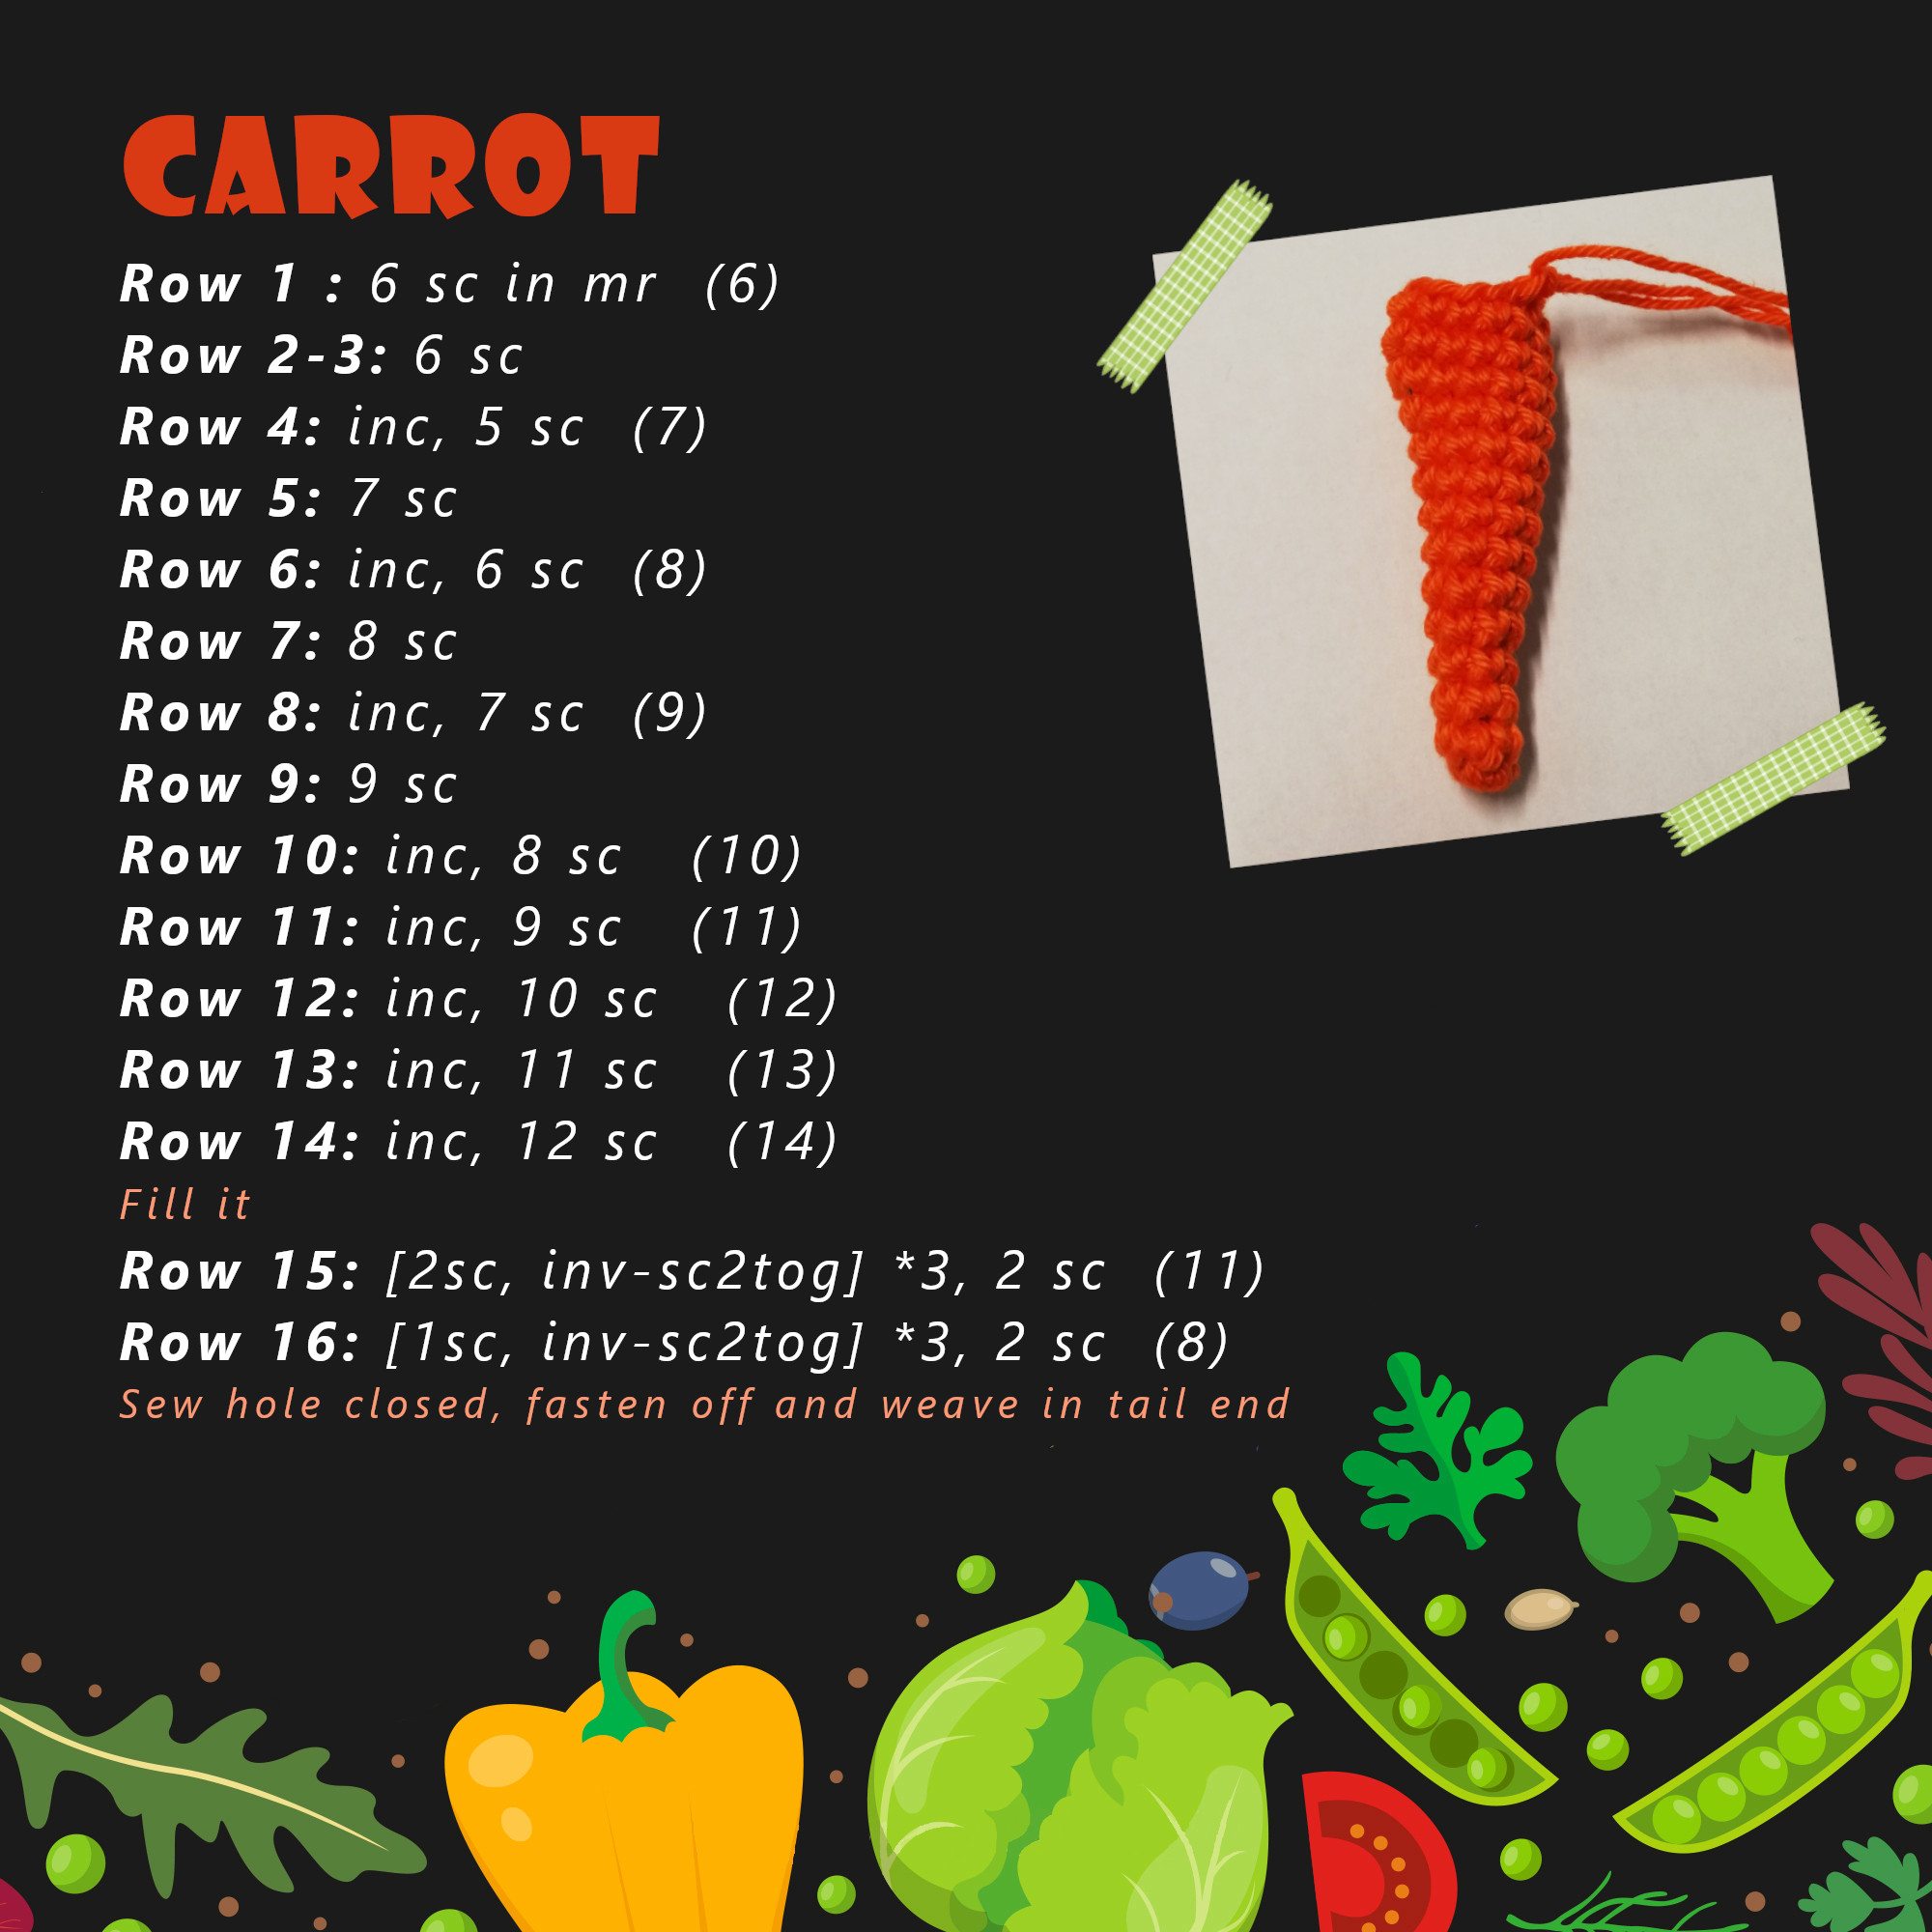 poppy crochet design free pattern carrot